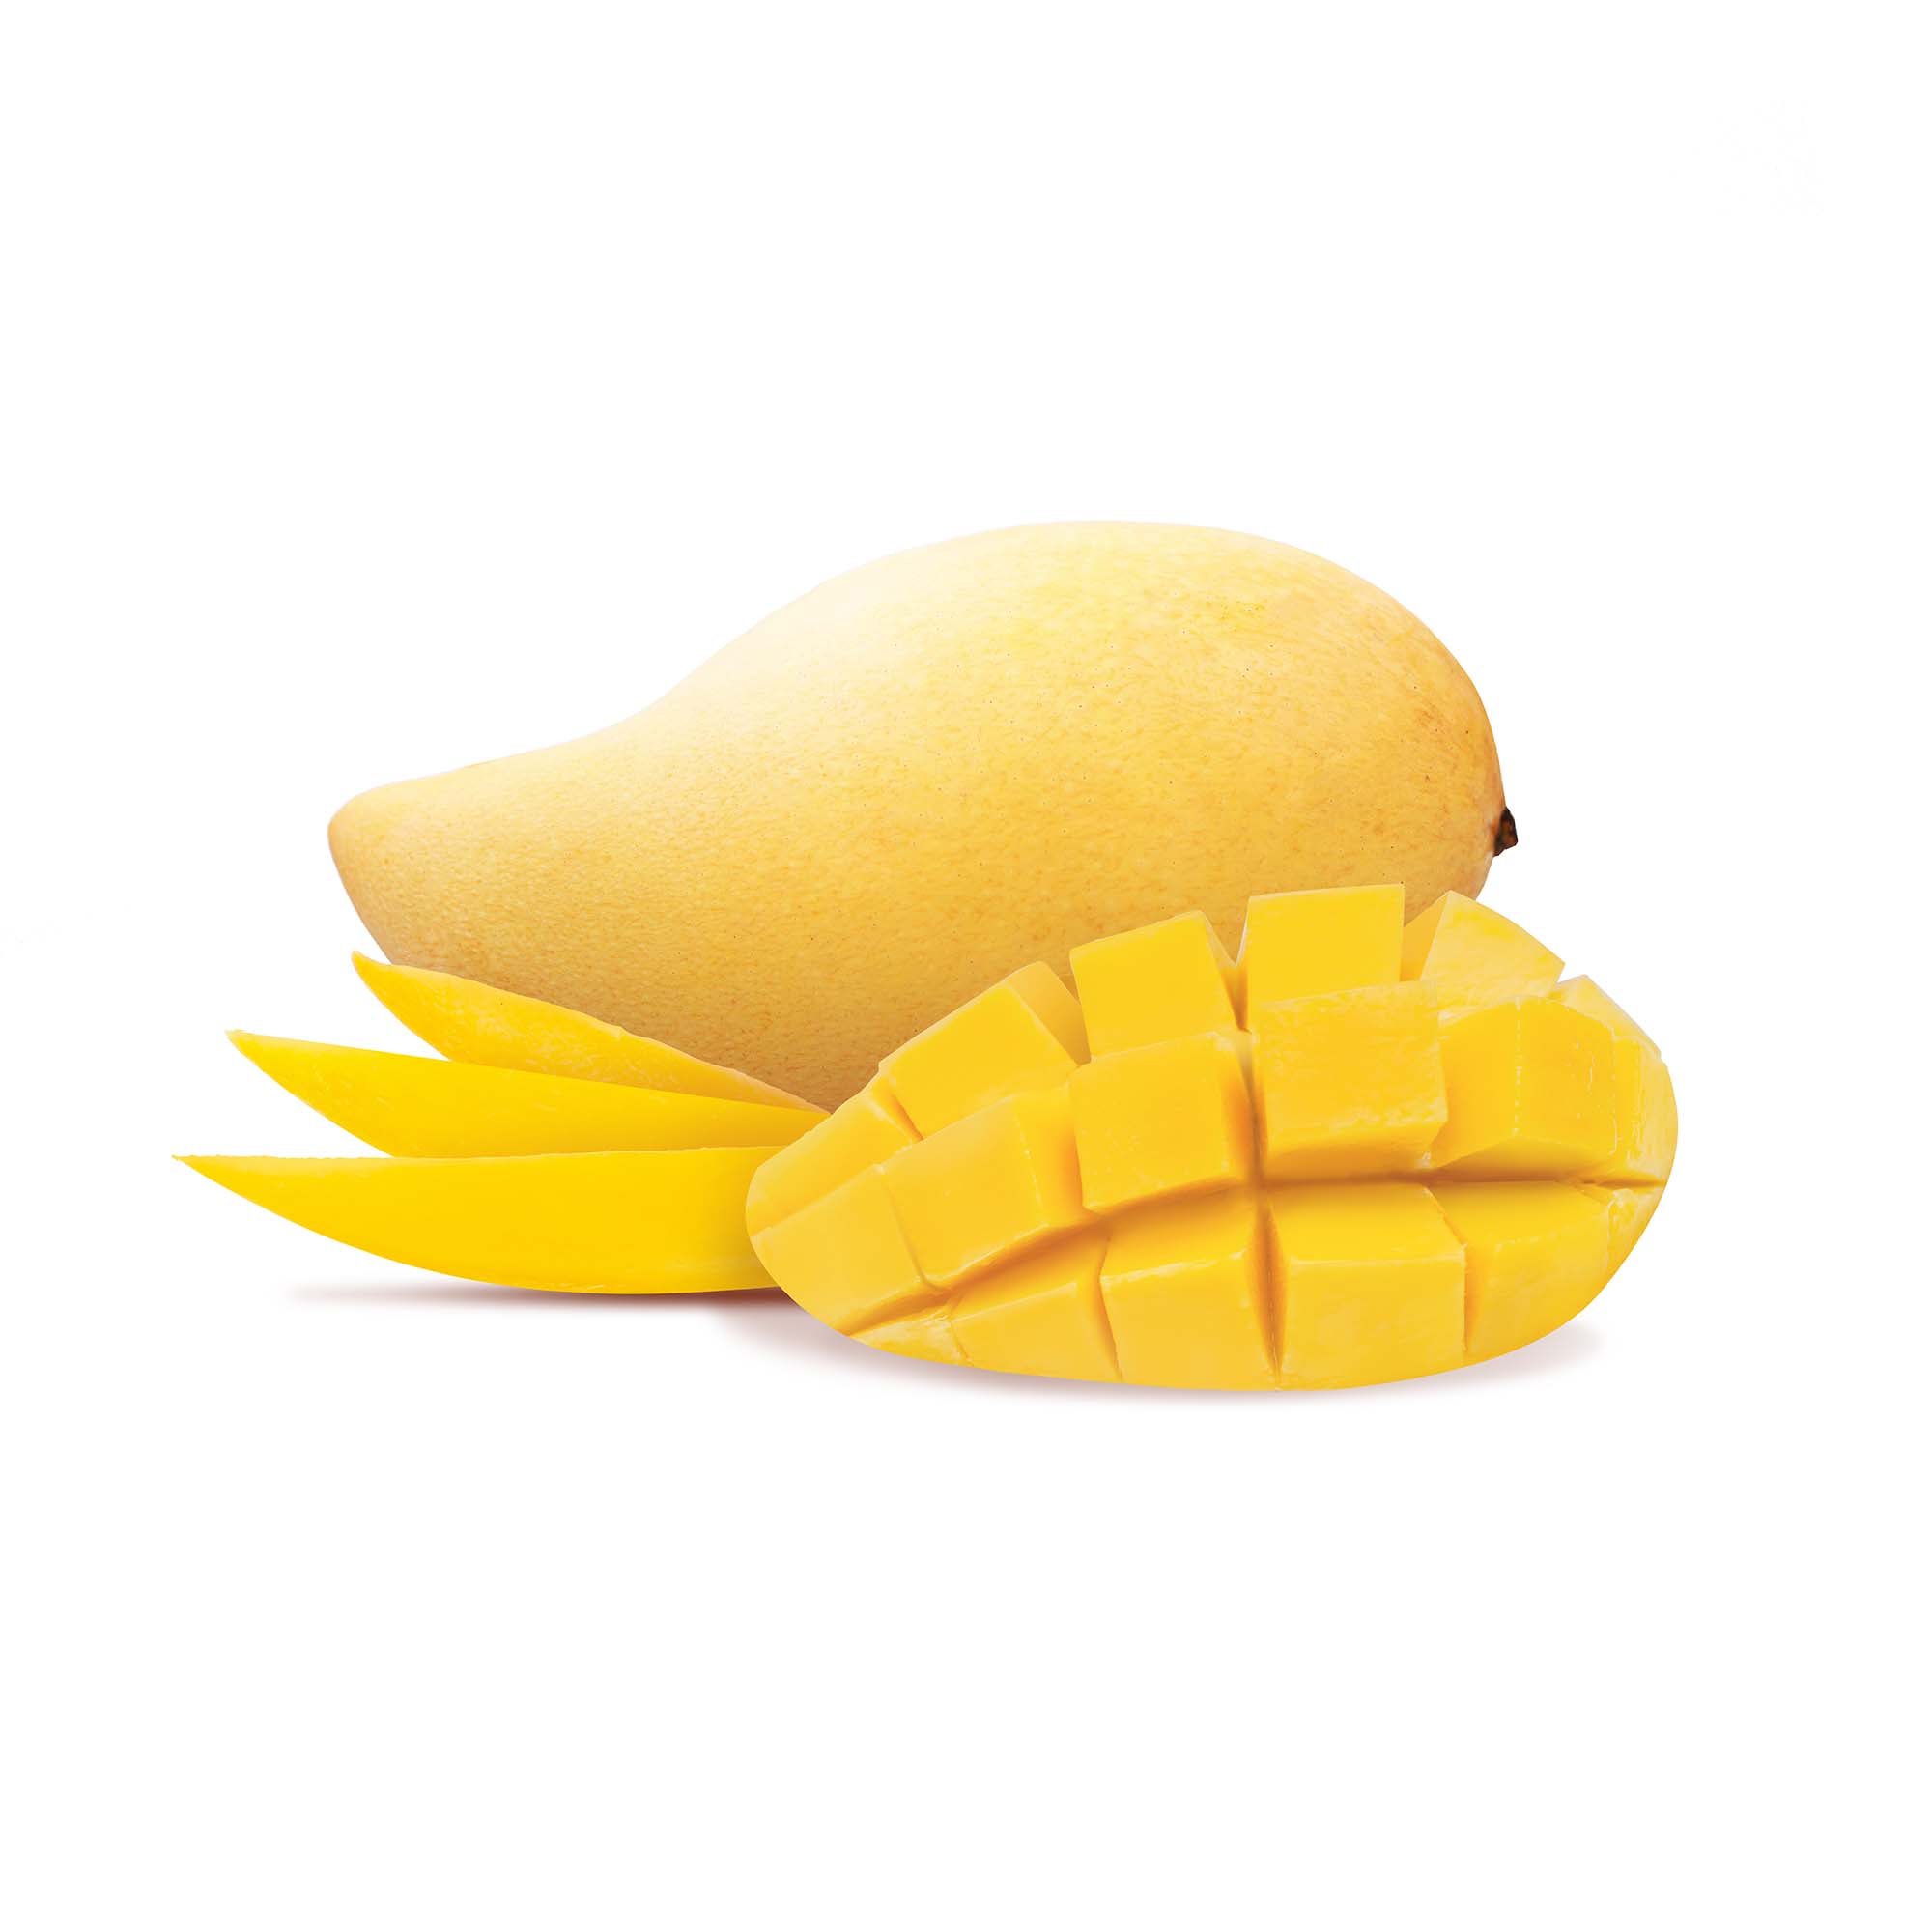 Mango - Nam Doc Mai | Exotic Fruits - Rare & Tropical Exotic Fruit Shop UK